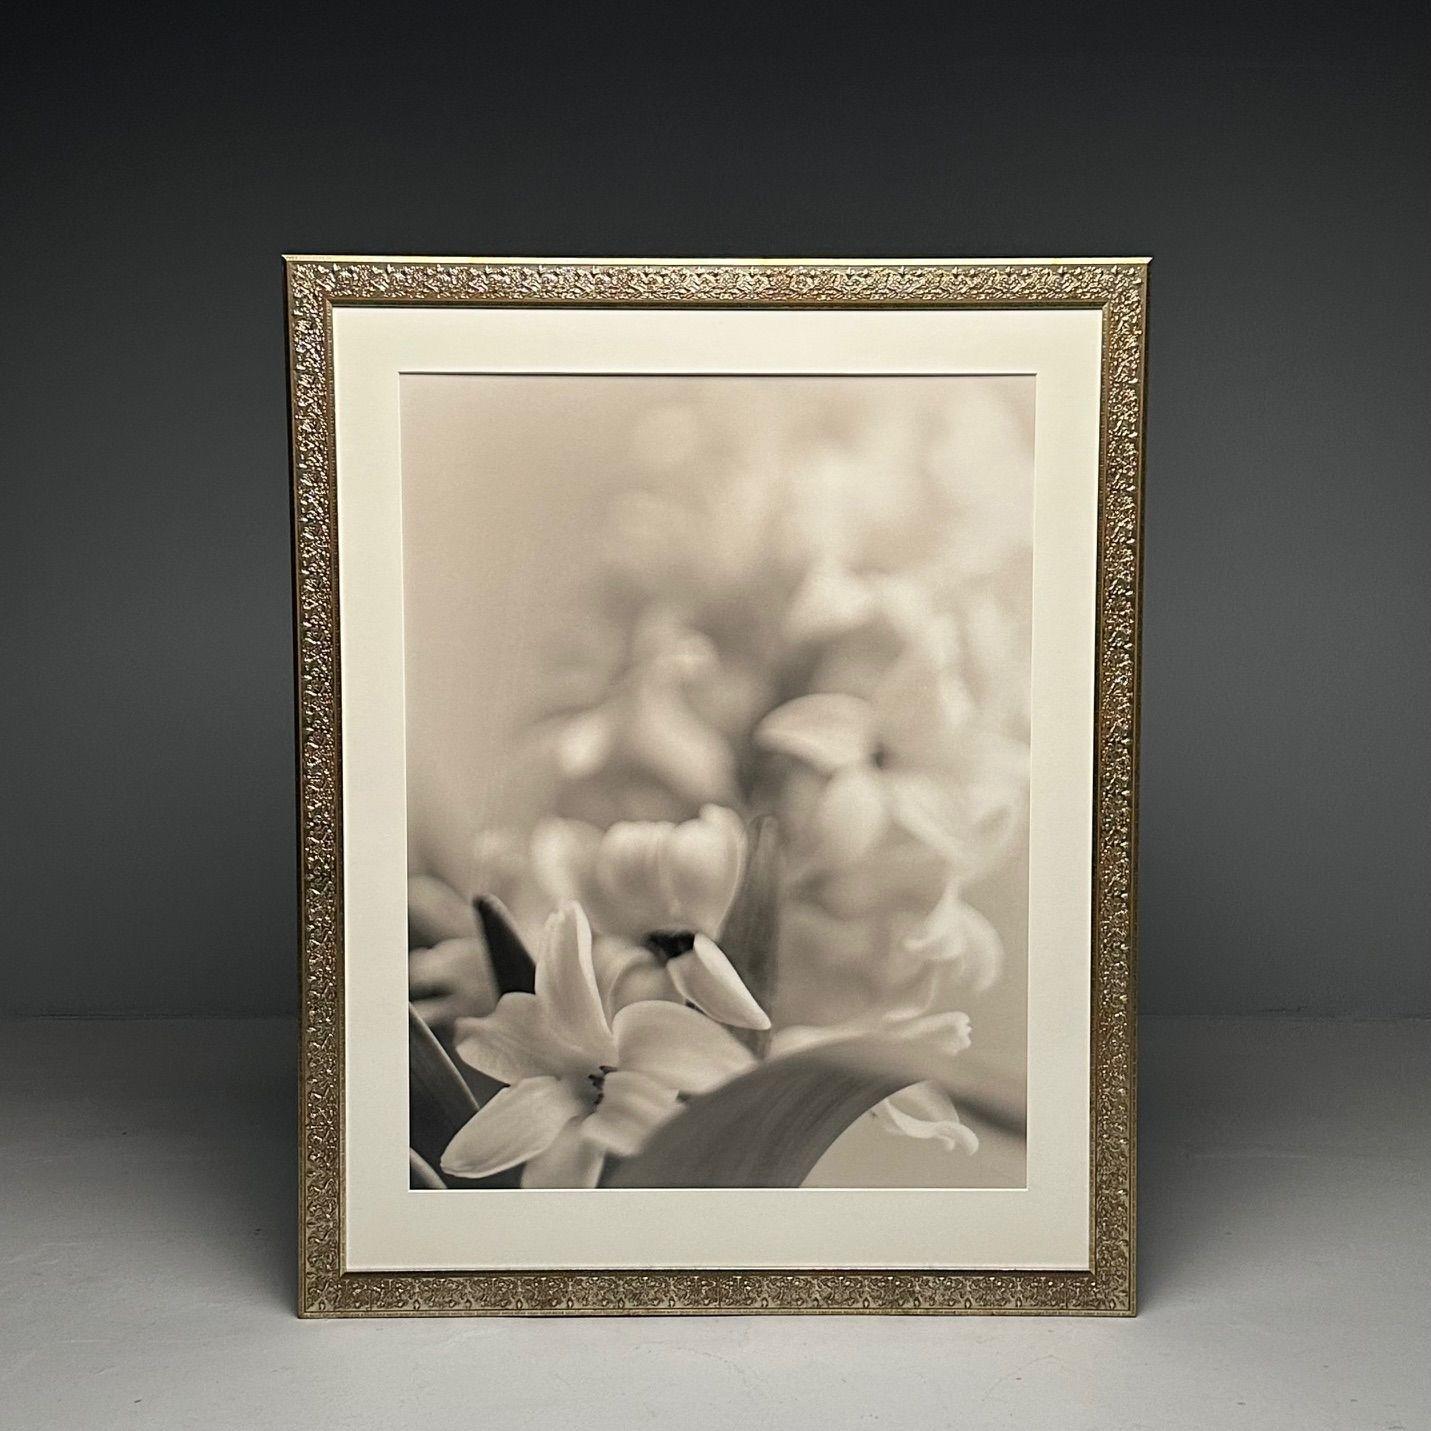 Moderne, große Schwarz-Weiß-Fotografien, Blumenstillleben, gerahmt, 1990er Jahre

Fünf große, gerahmte Blumenstillleben aus der Avon Corporate Collection'S. Der Preis gilt für jedes einzelne Werk - alle fünf gerahmten Werke sind derzeit